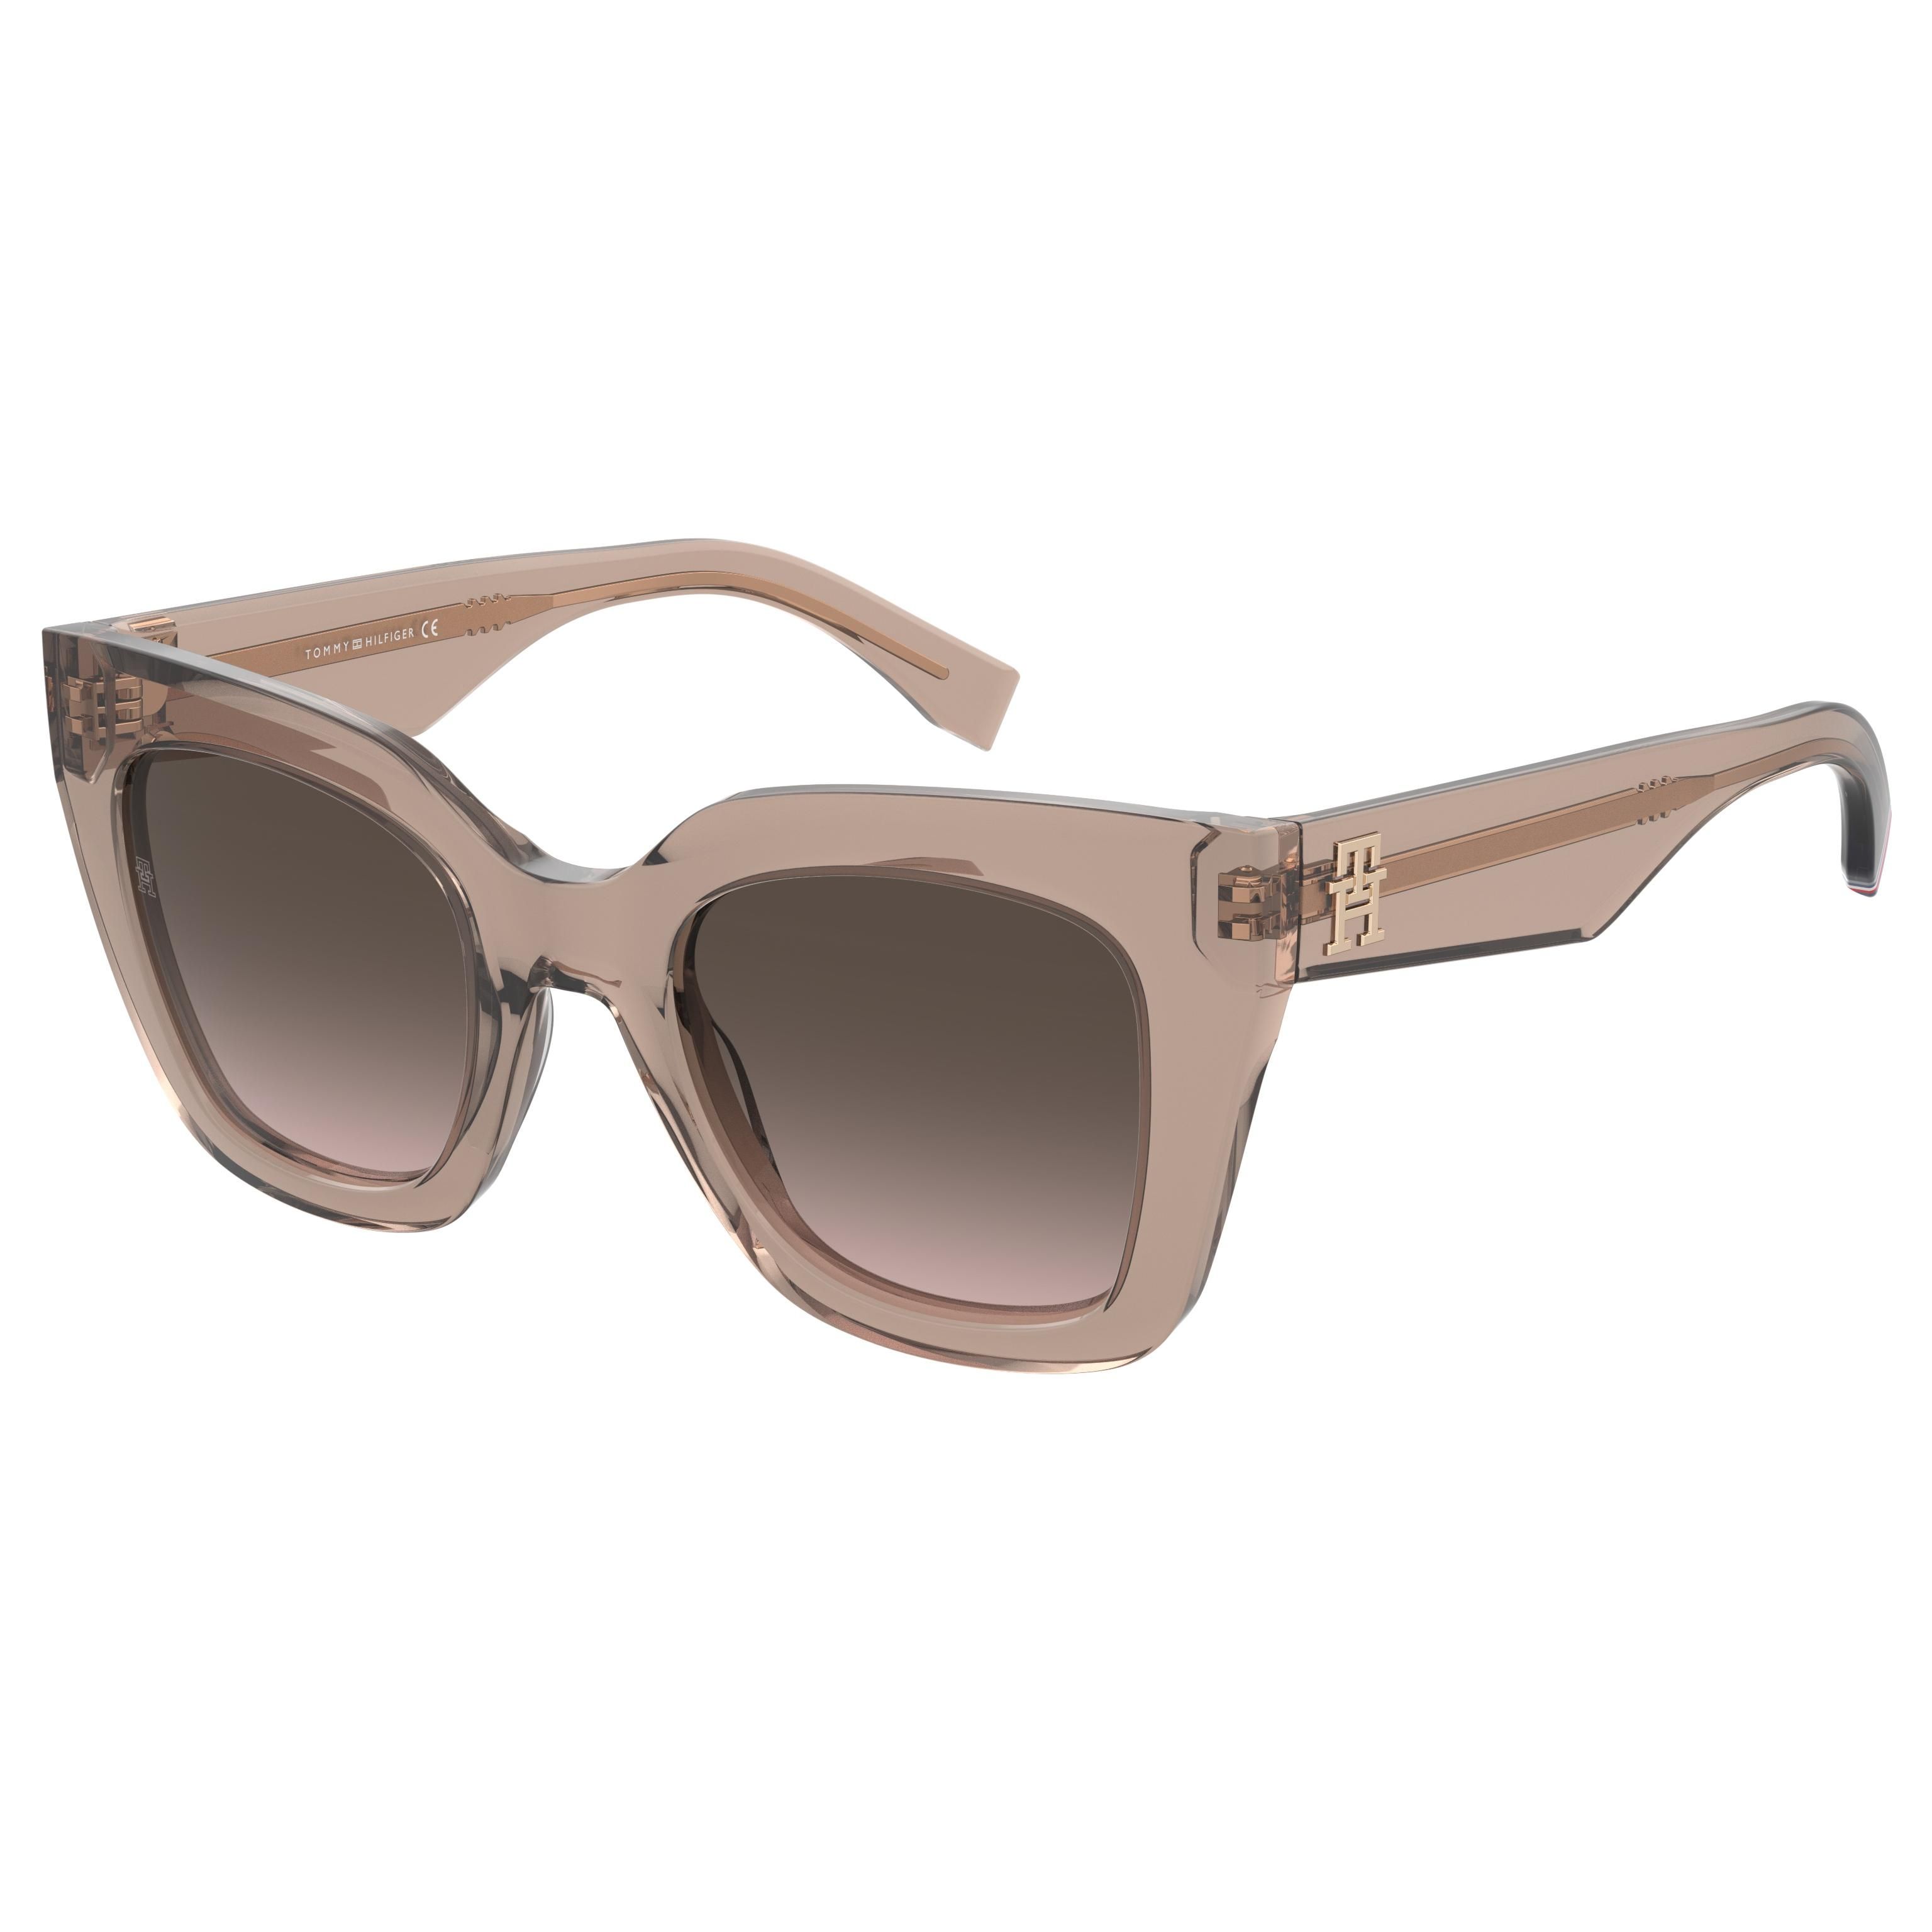 TH 2051 S Square Sunglasses FWM - size 50